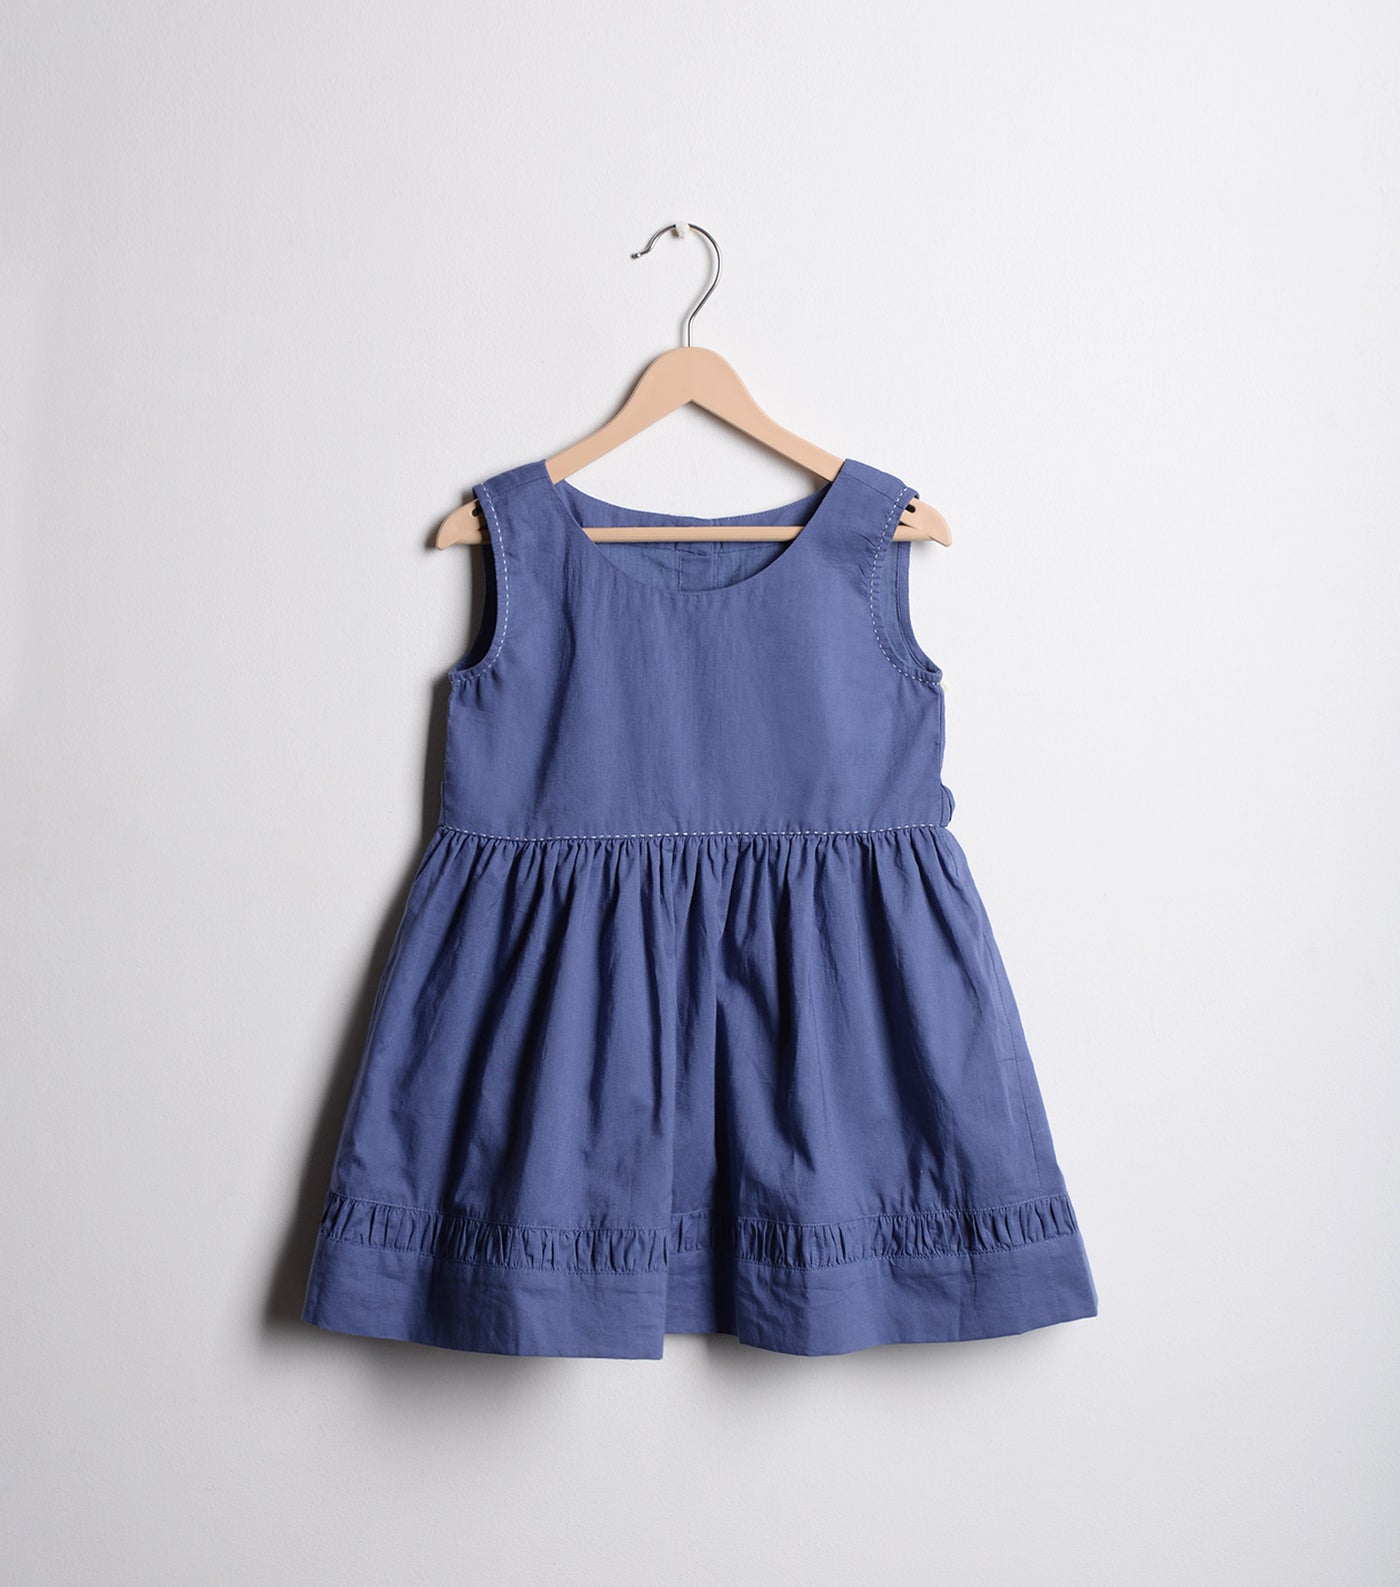 Blue Cotton Dress